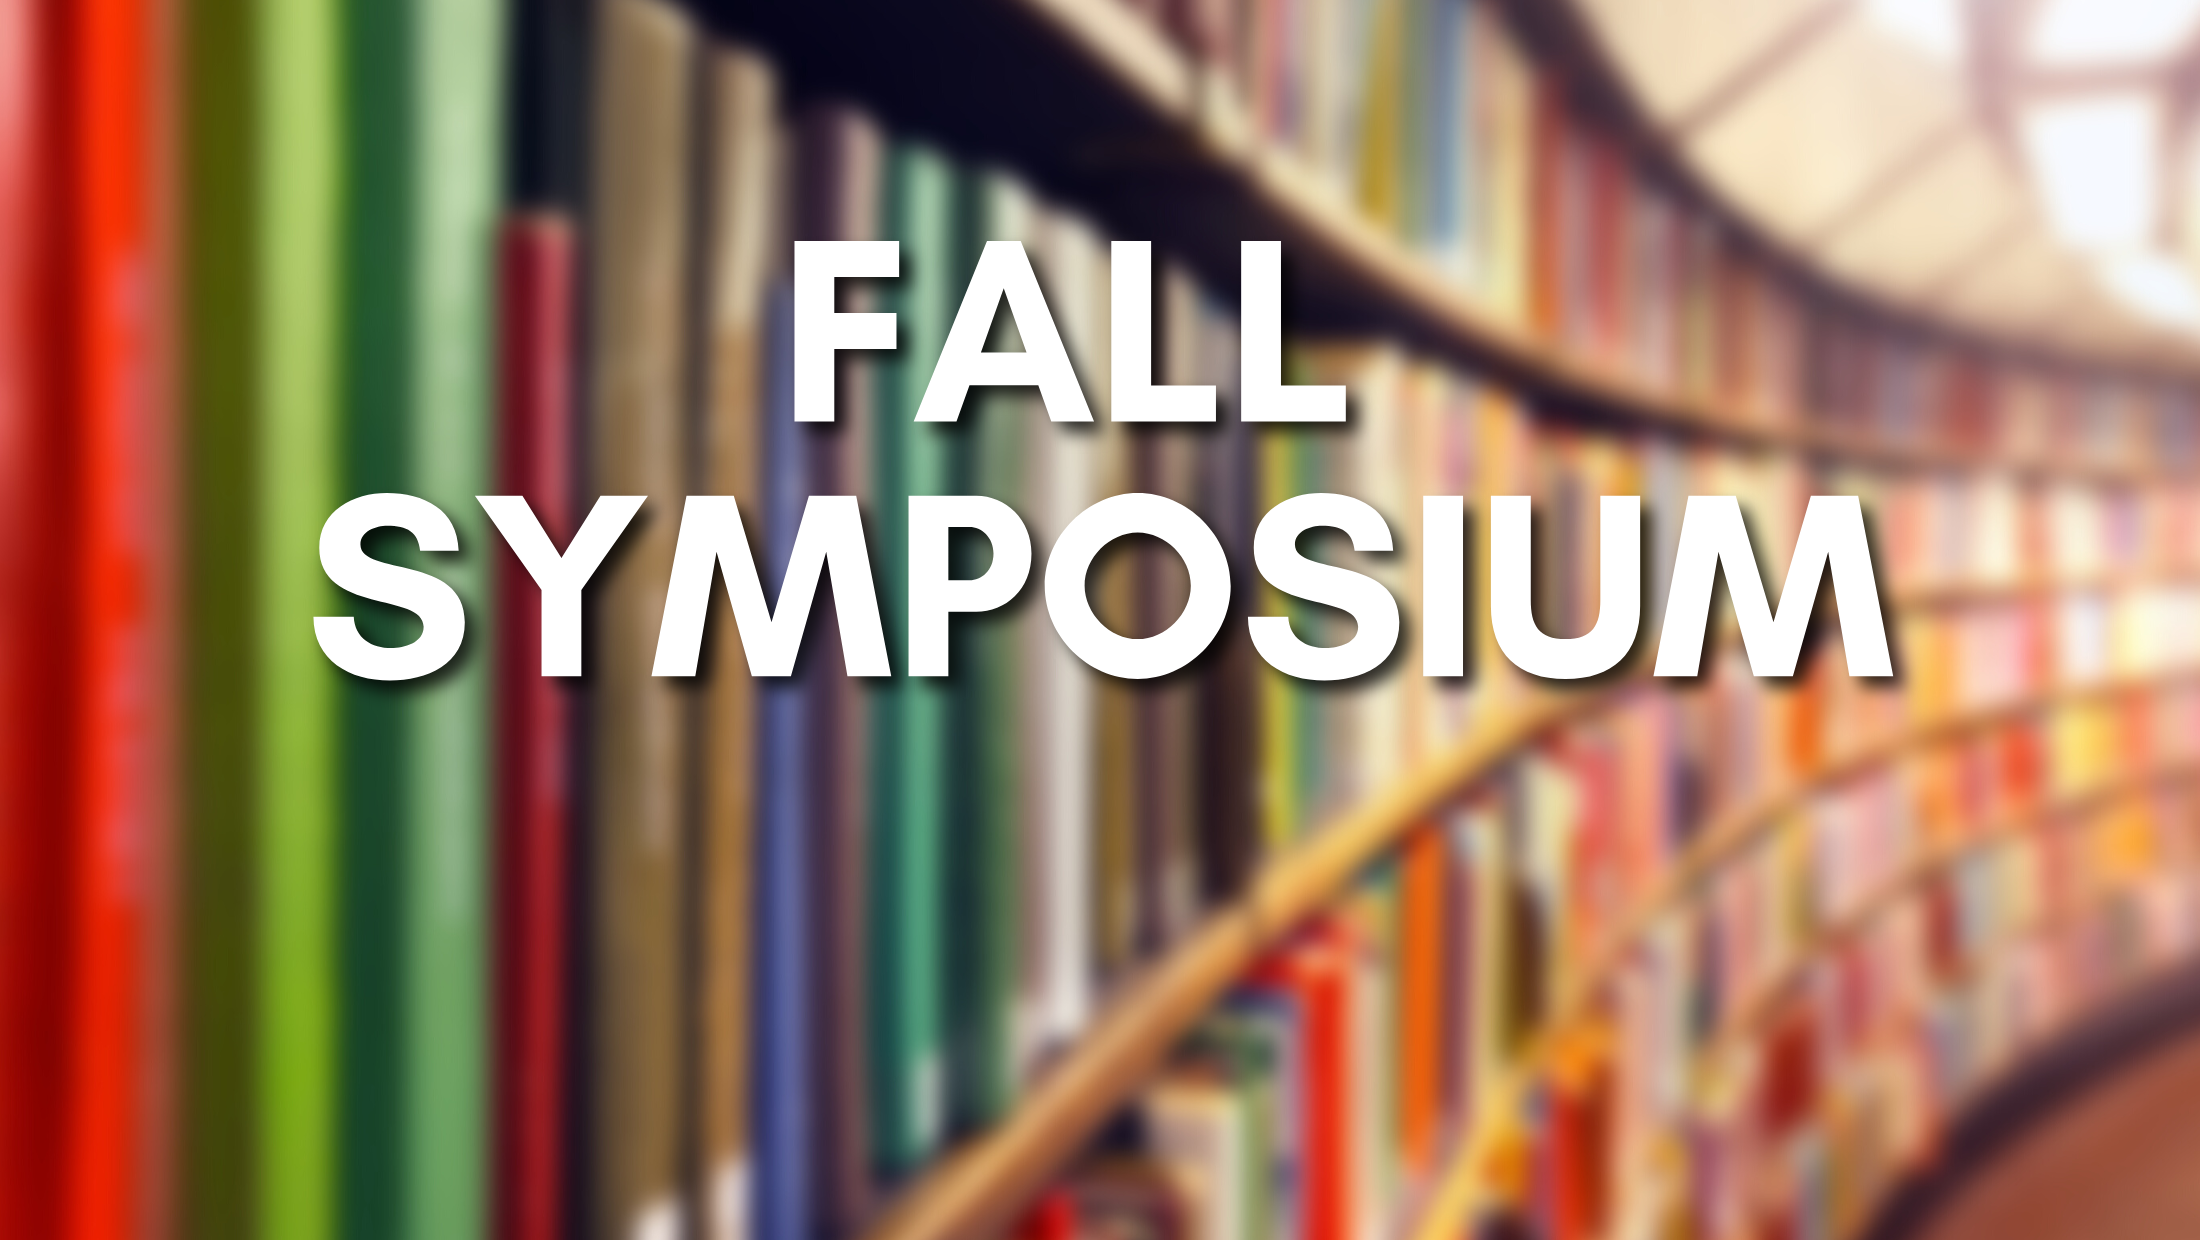 Fall Symposium Website Event Image - No logos - 2022